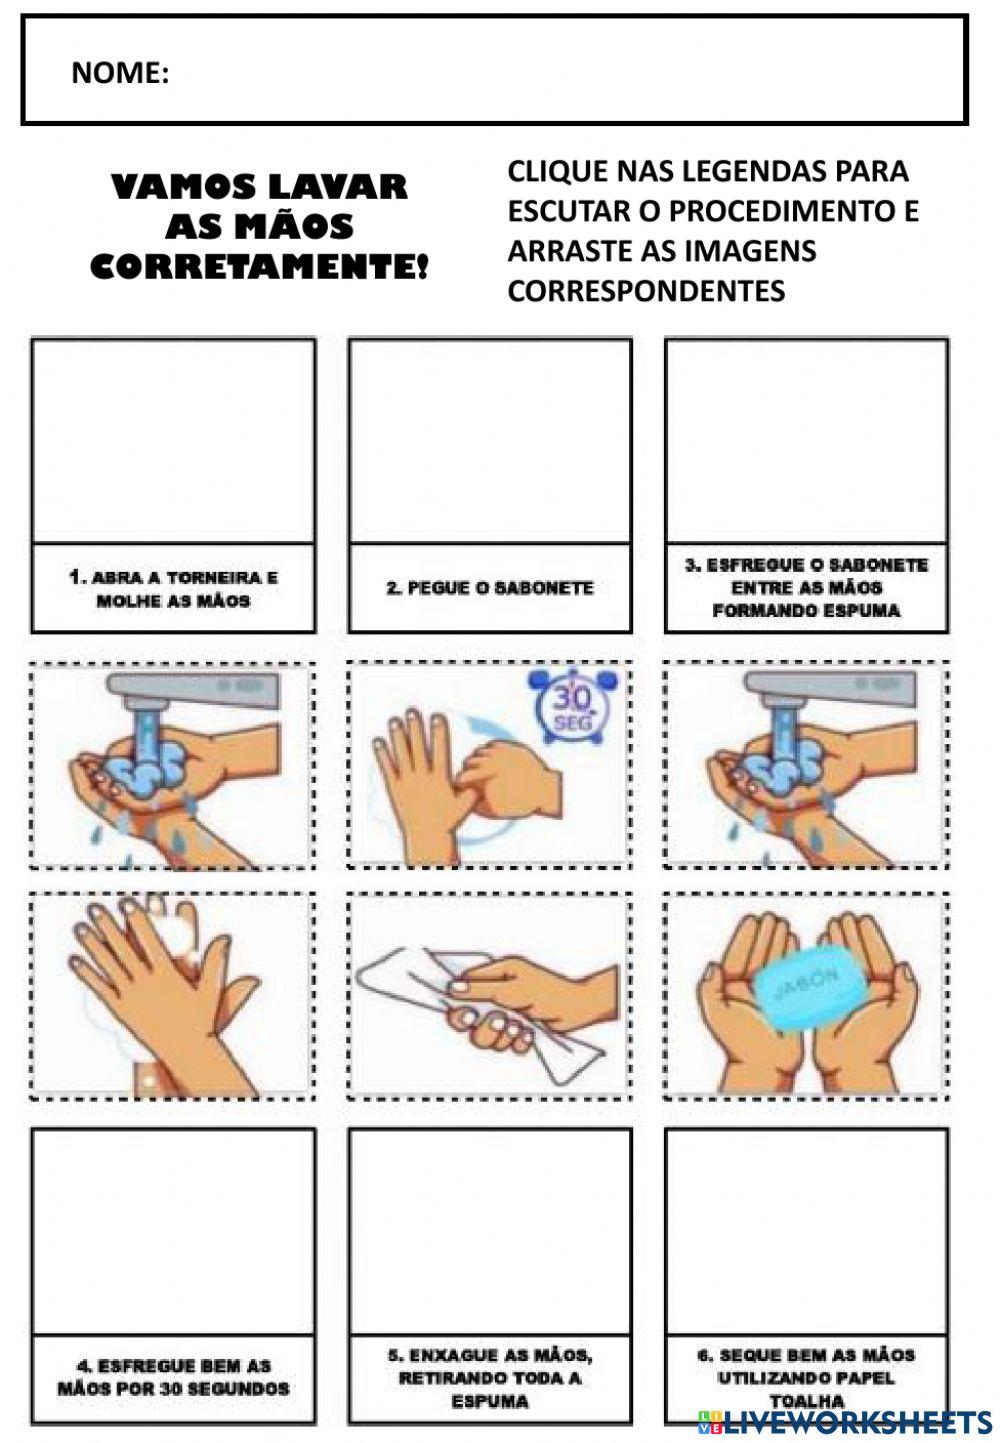 Higiene pessoal e saúde :lavar as mãos